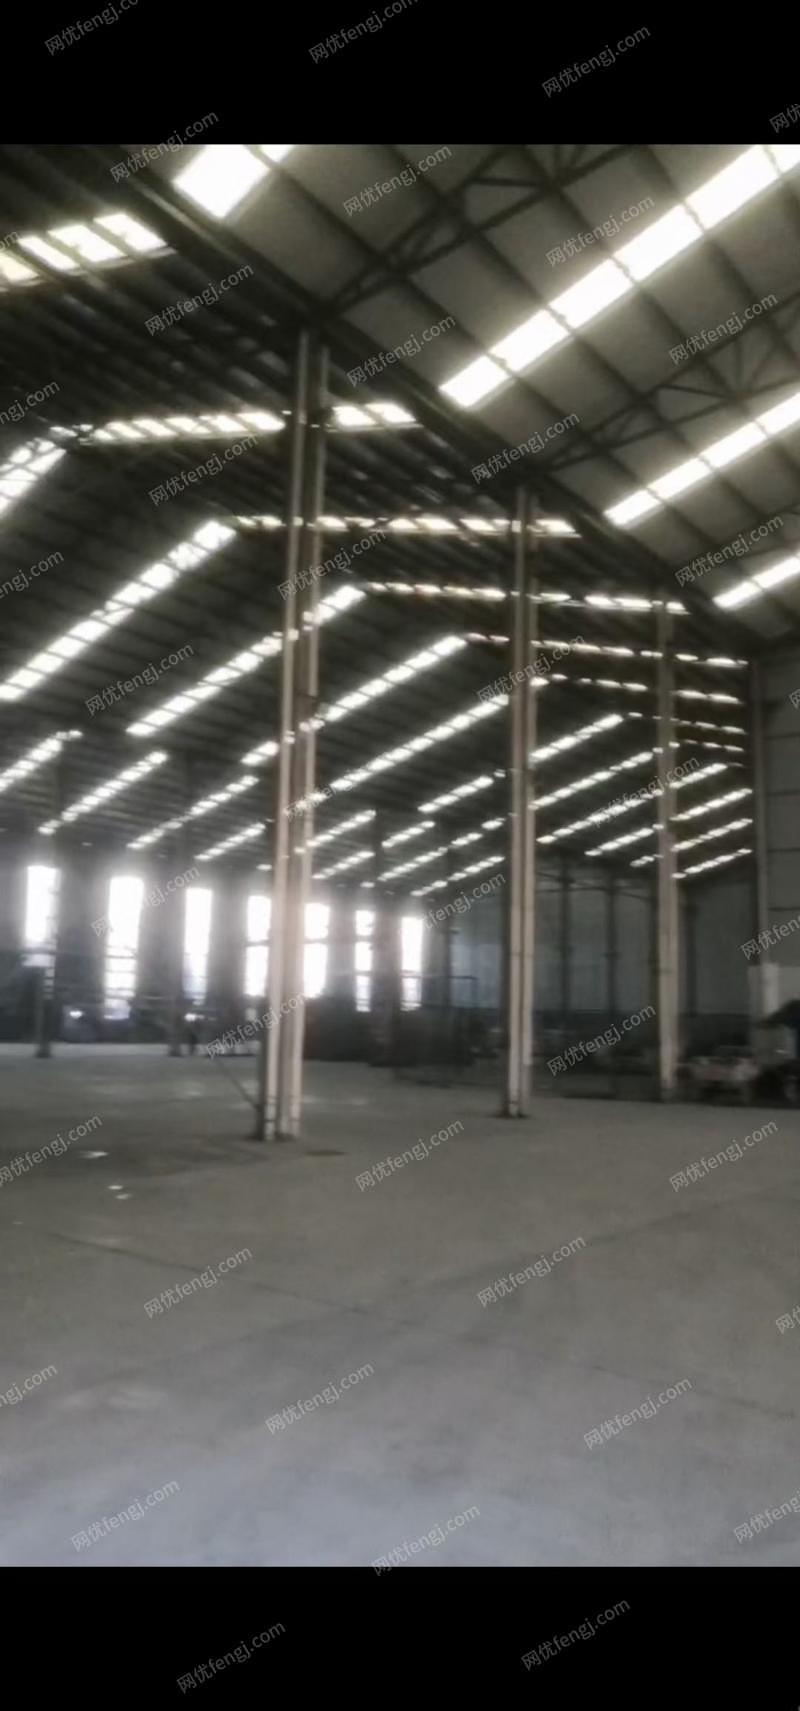 二手钢结构厂房/厂房回收